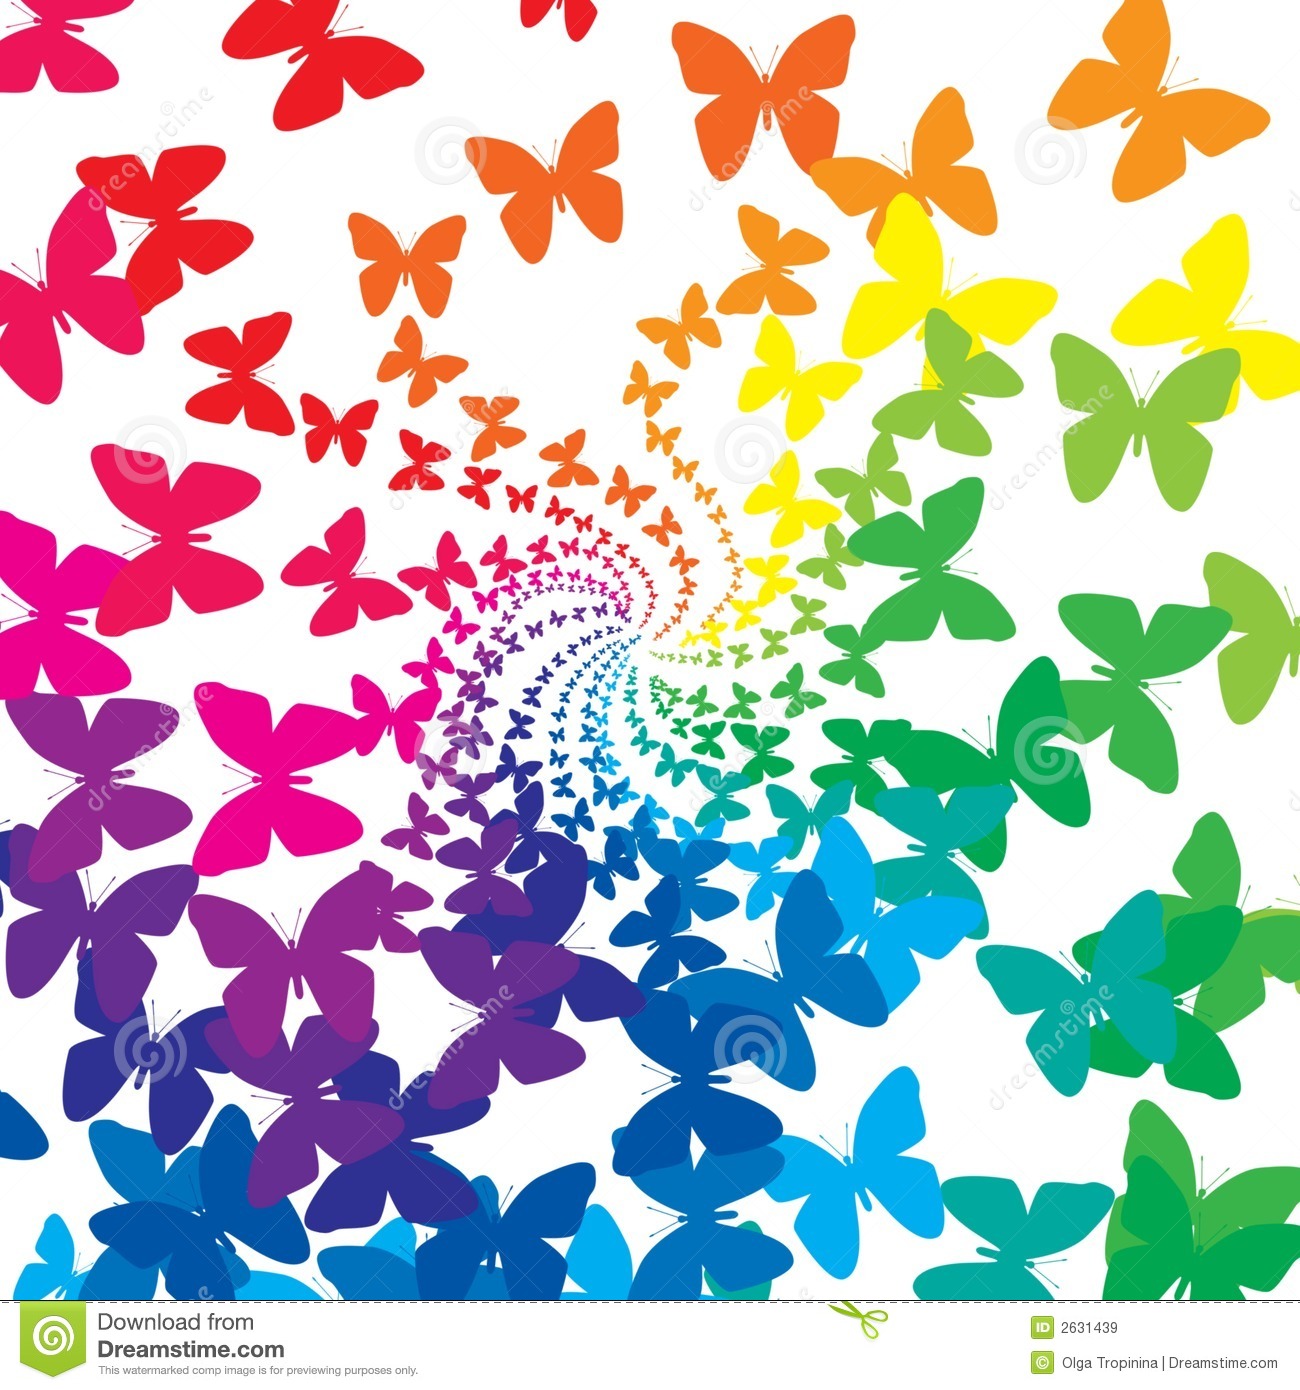 Els secrets d'en Miquel i les papallones de colors a Retroba't